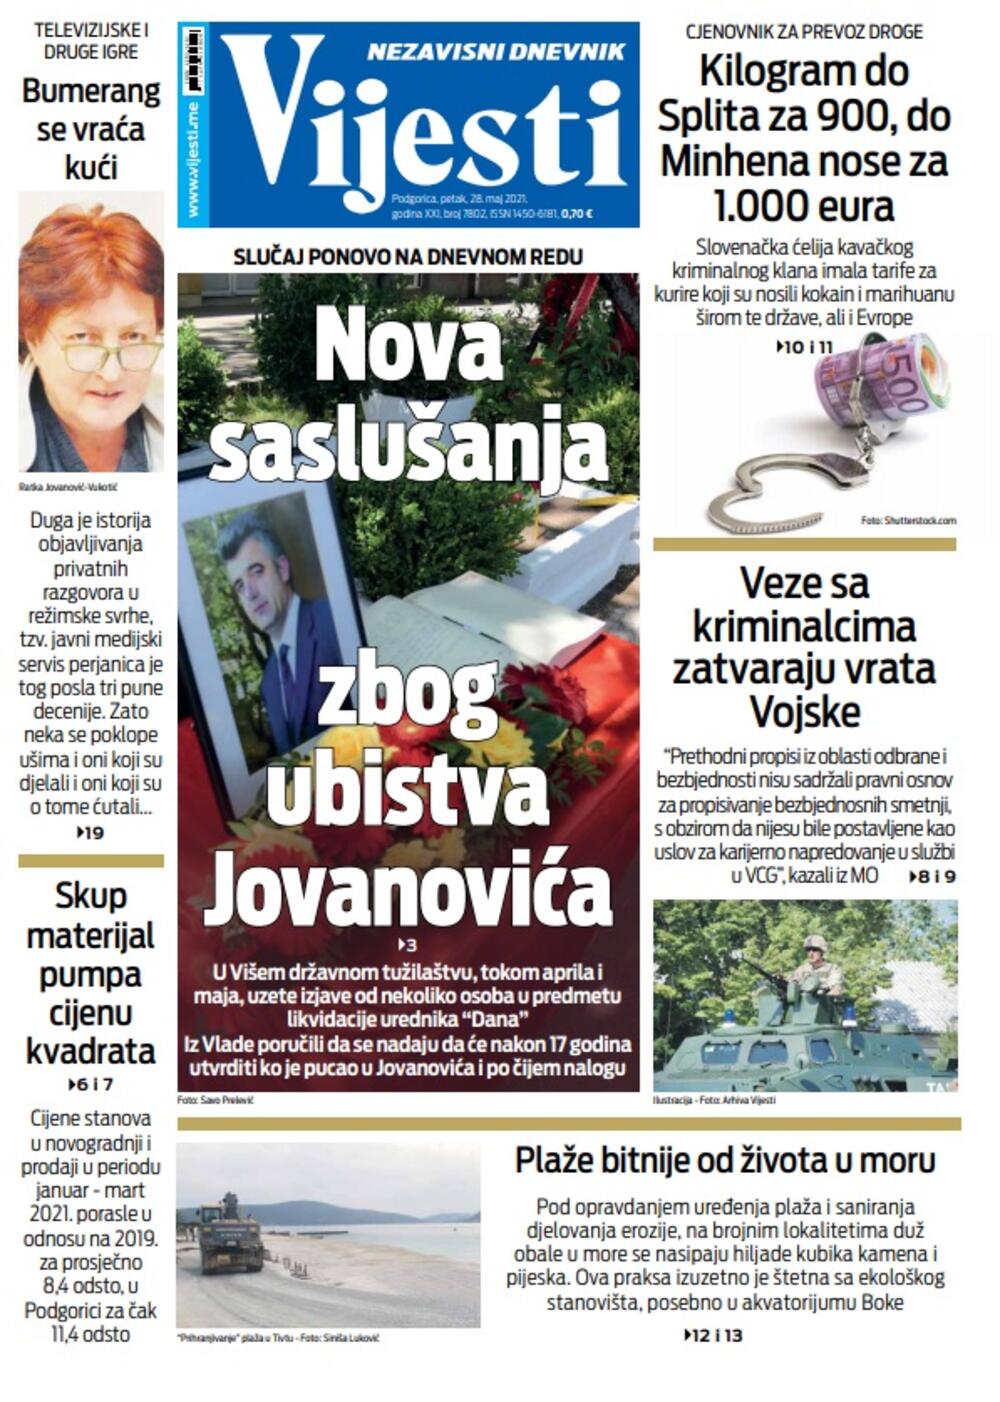 Naslovna strana "Vijesti" za 28. maj 2021., Foto: Vijesti